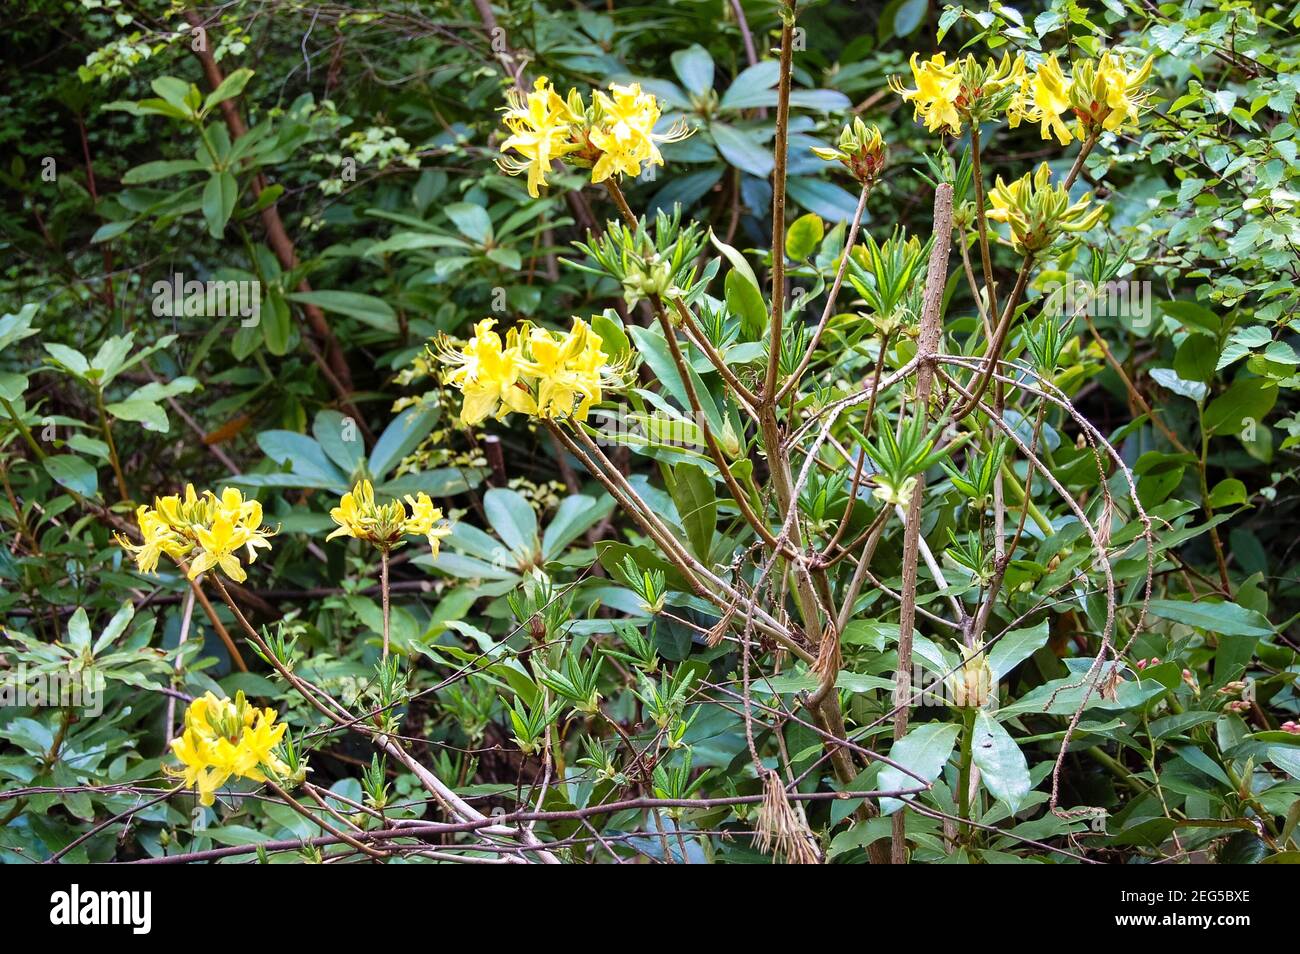 Fiori gialli a Cragside Northumberland UK giardino piante piante piante primavera fiore stile sottobosco esterno felice bel colore colori odori Foto Stock